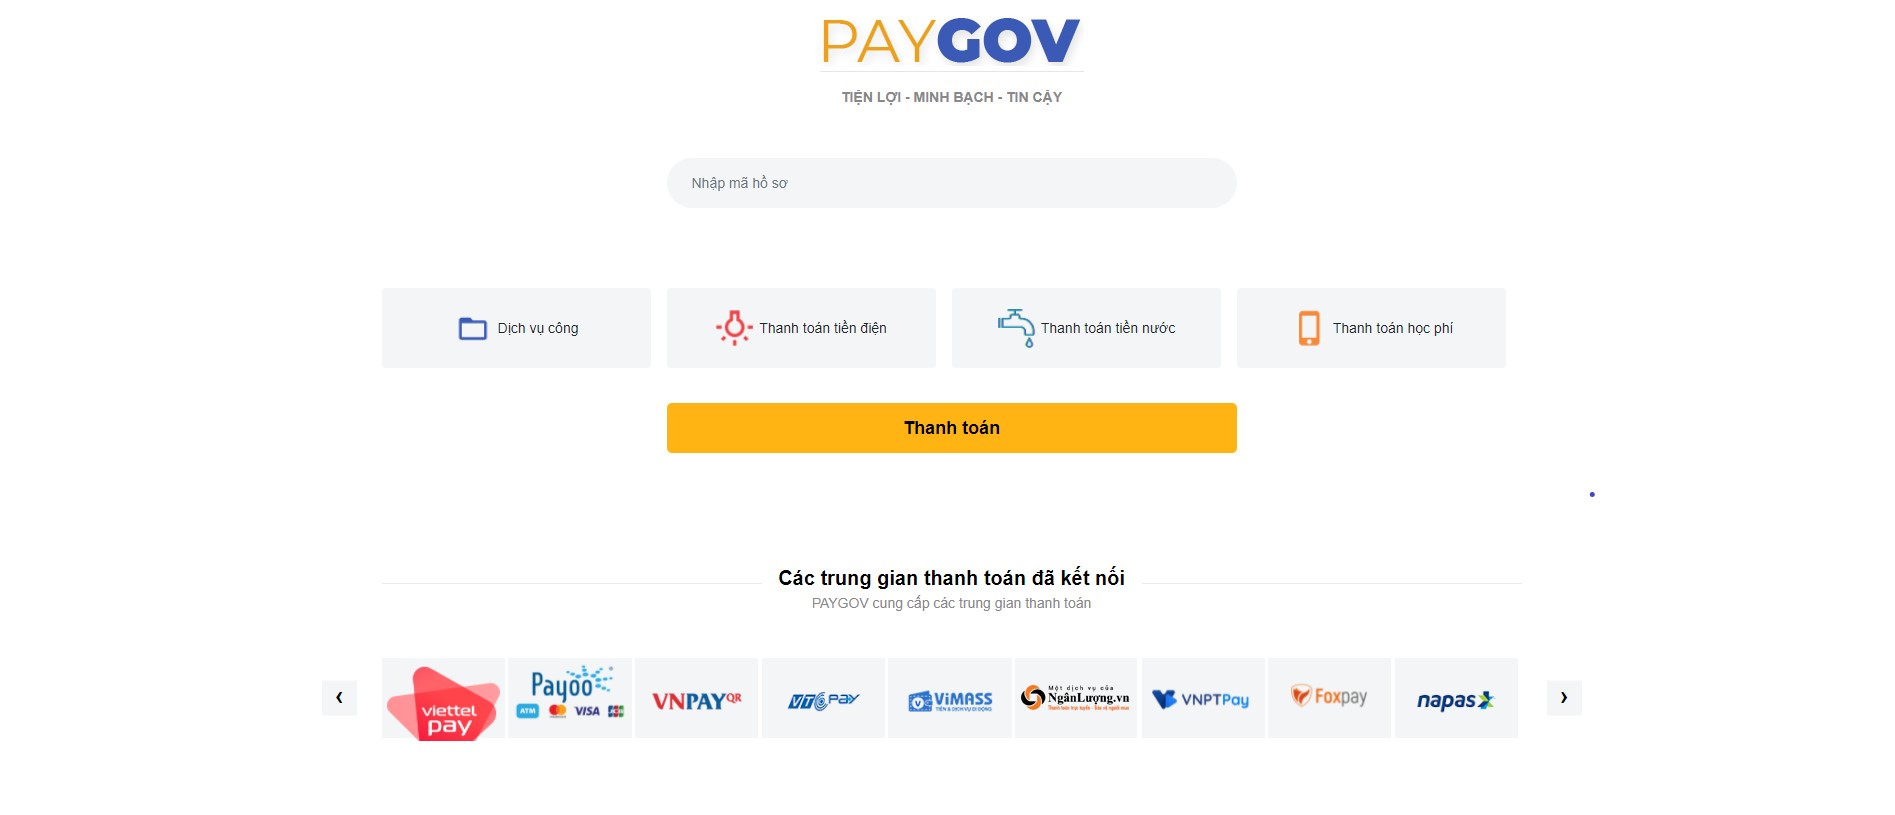 Cổng hỗ trợ thanh toán quốc gia - PAYGOV 